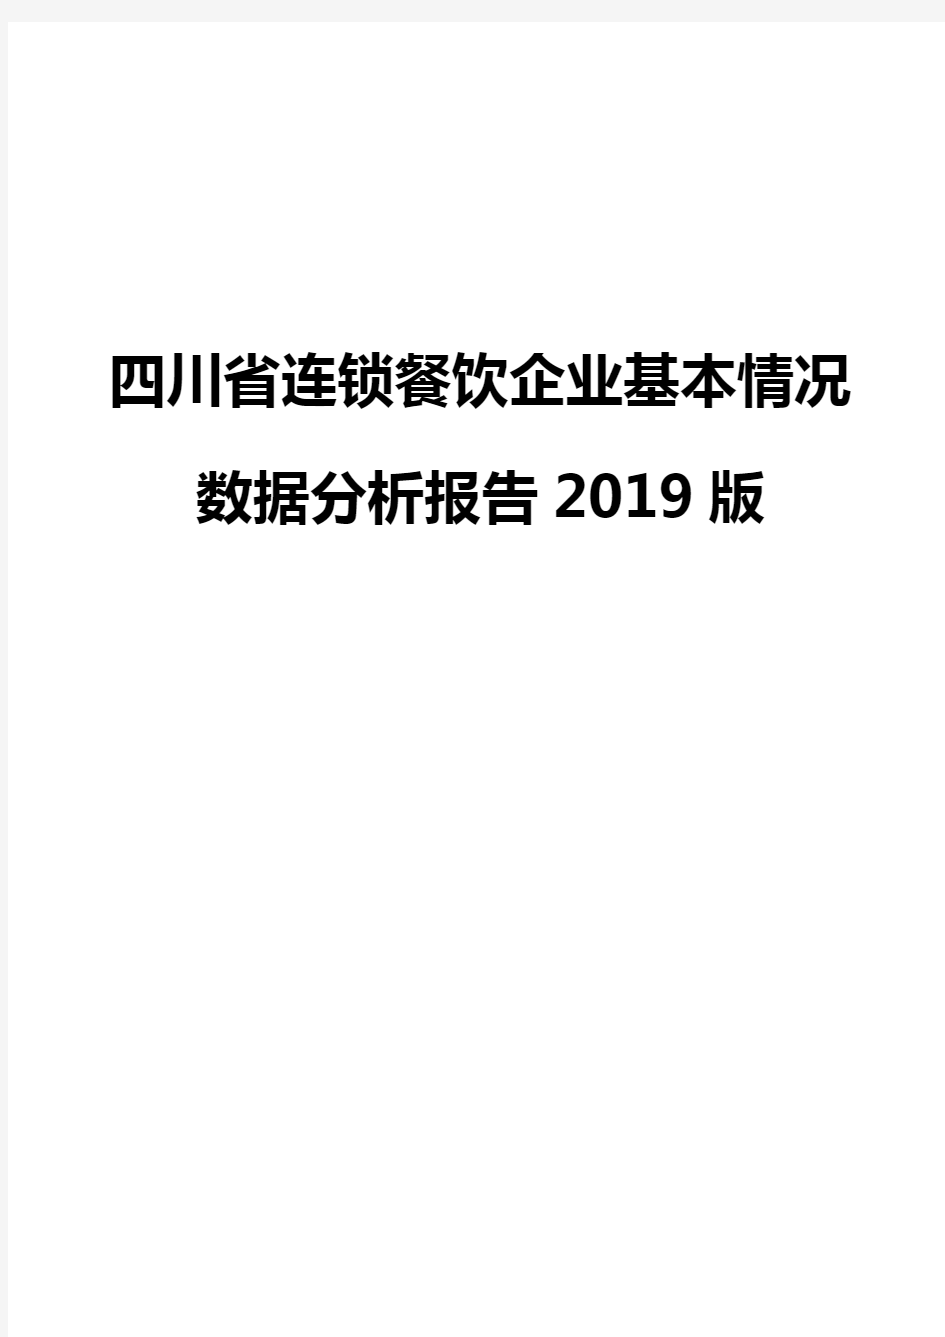 四川省连锁餐饮企业基本情况数据分析报告2019版